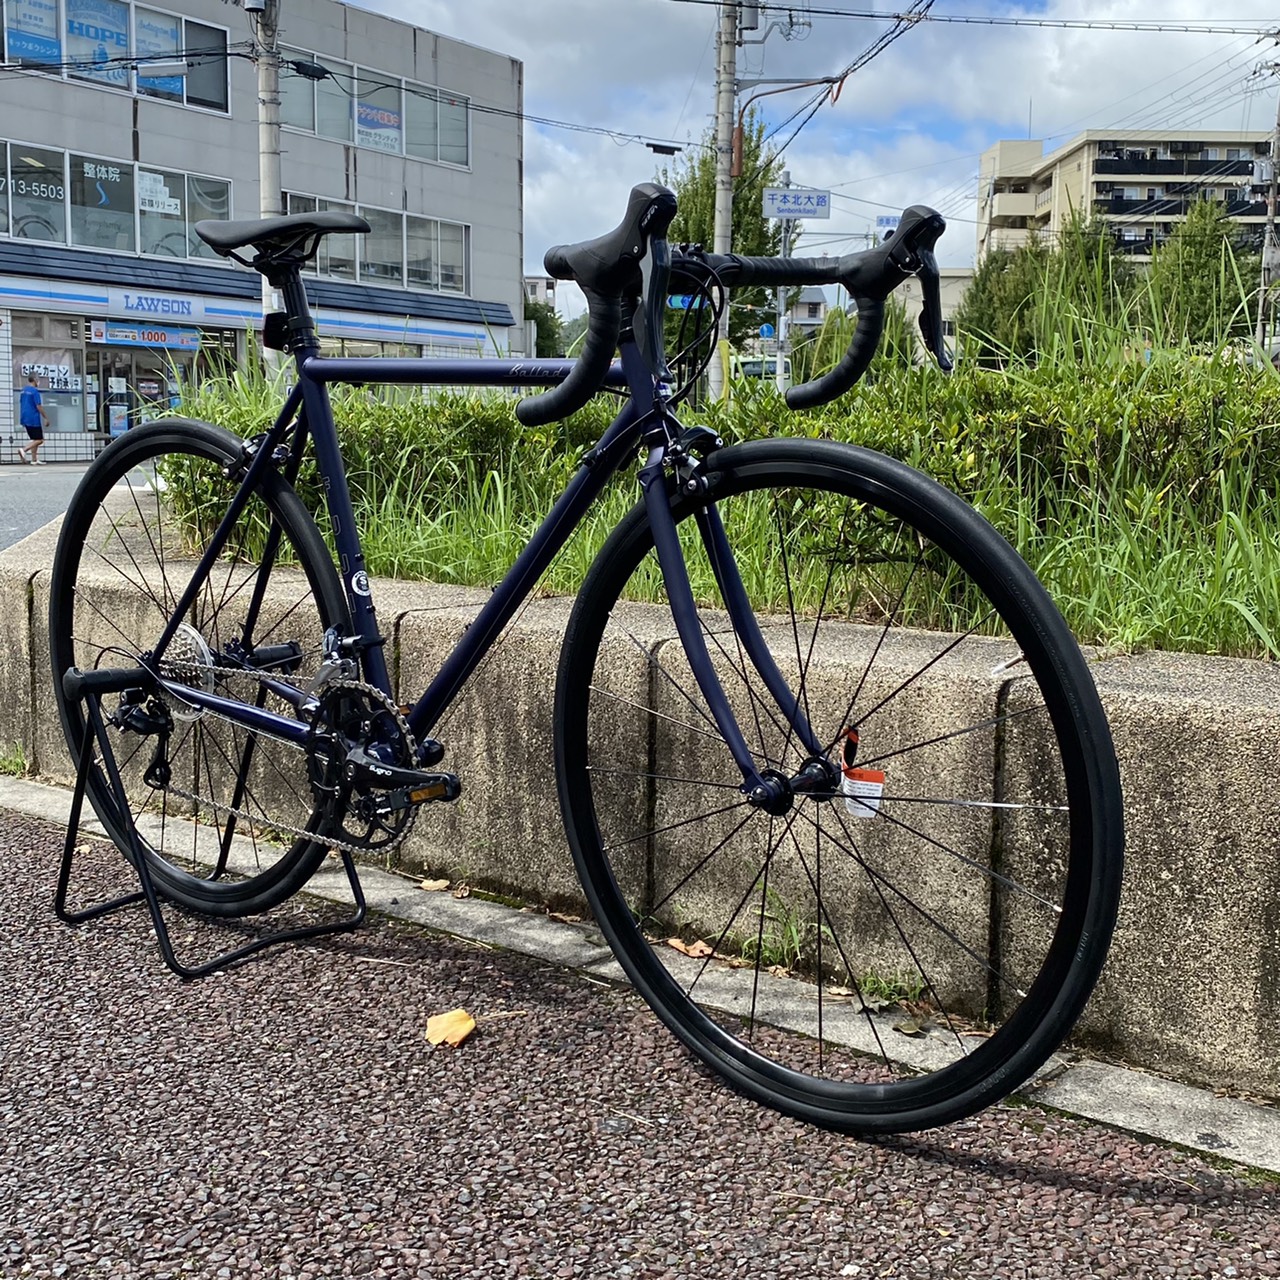 ストリート系ロード!?】新車ロードバイクのご紹介です。 | 京都の中古自転車・新車販売 サイクルショップ エイリン